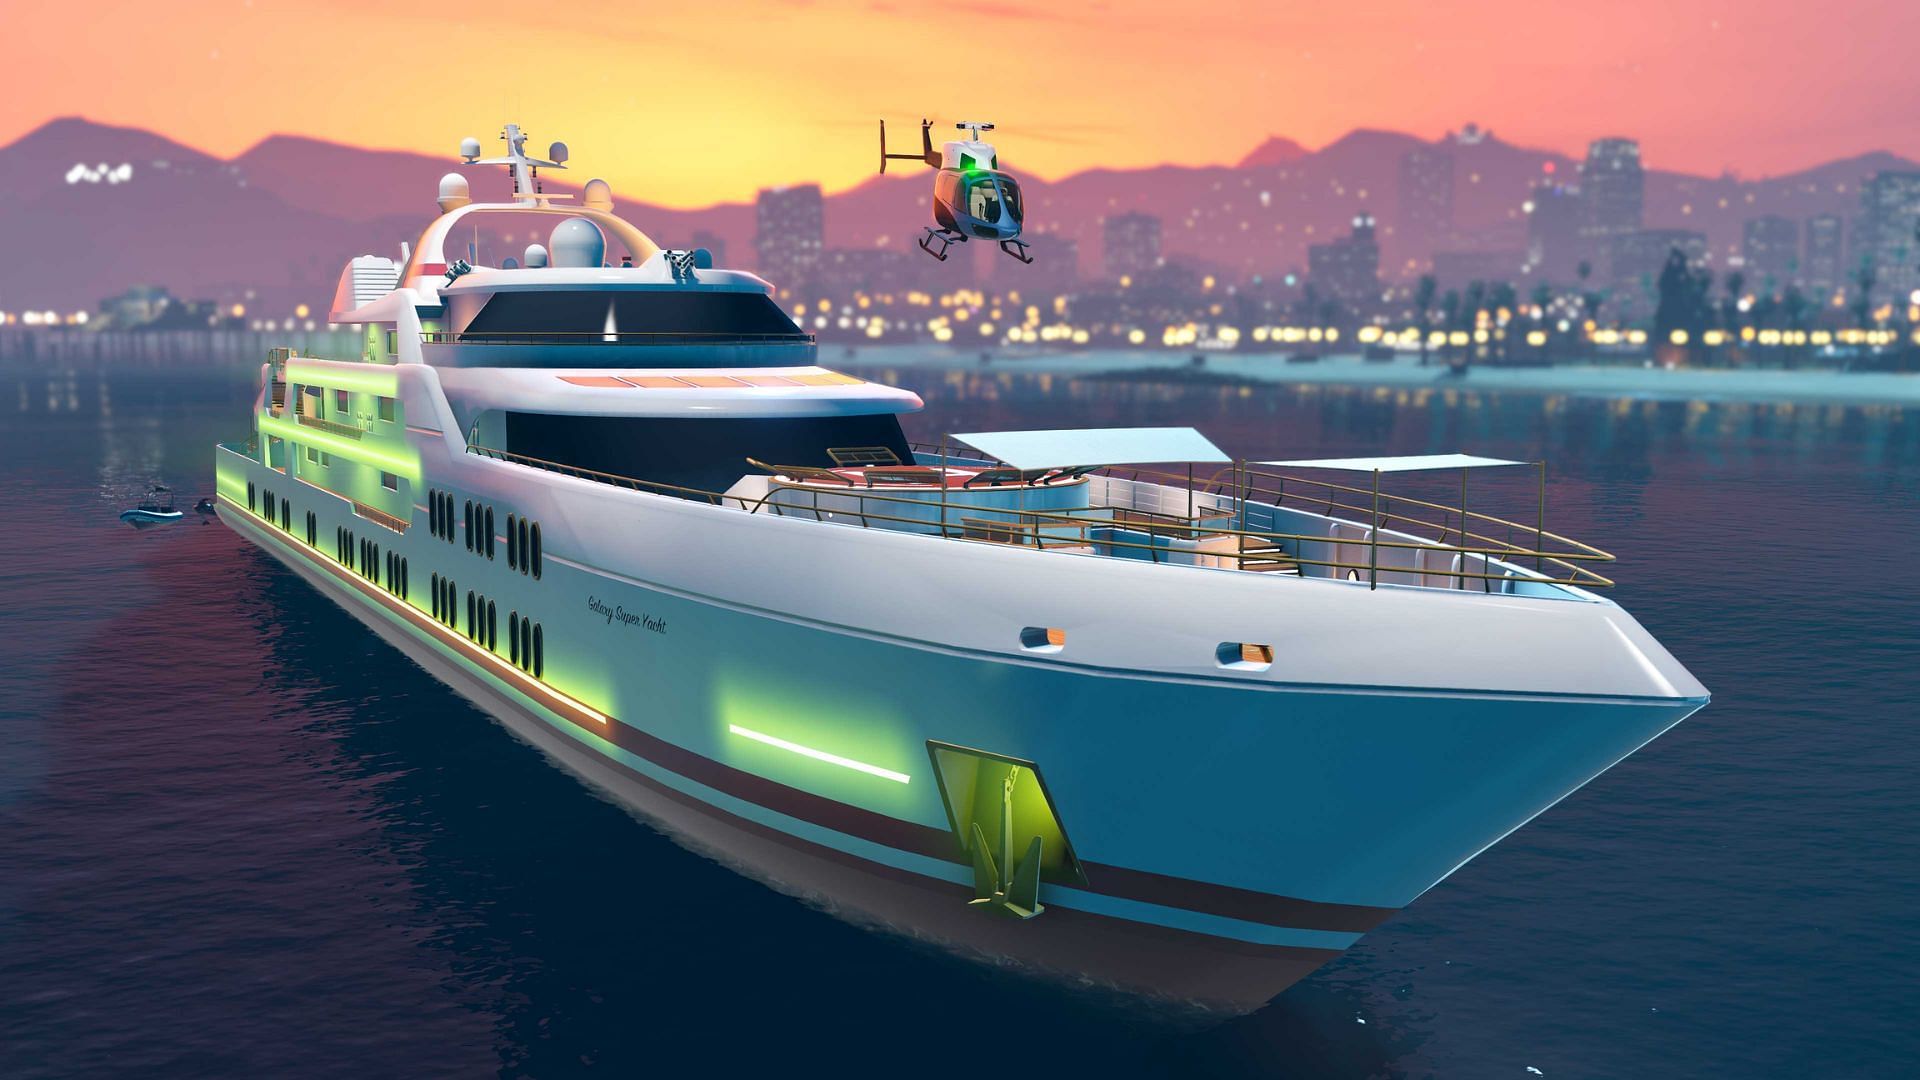 gta online yacht colors